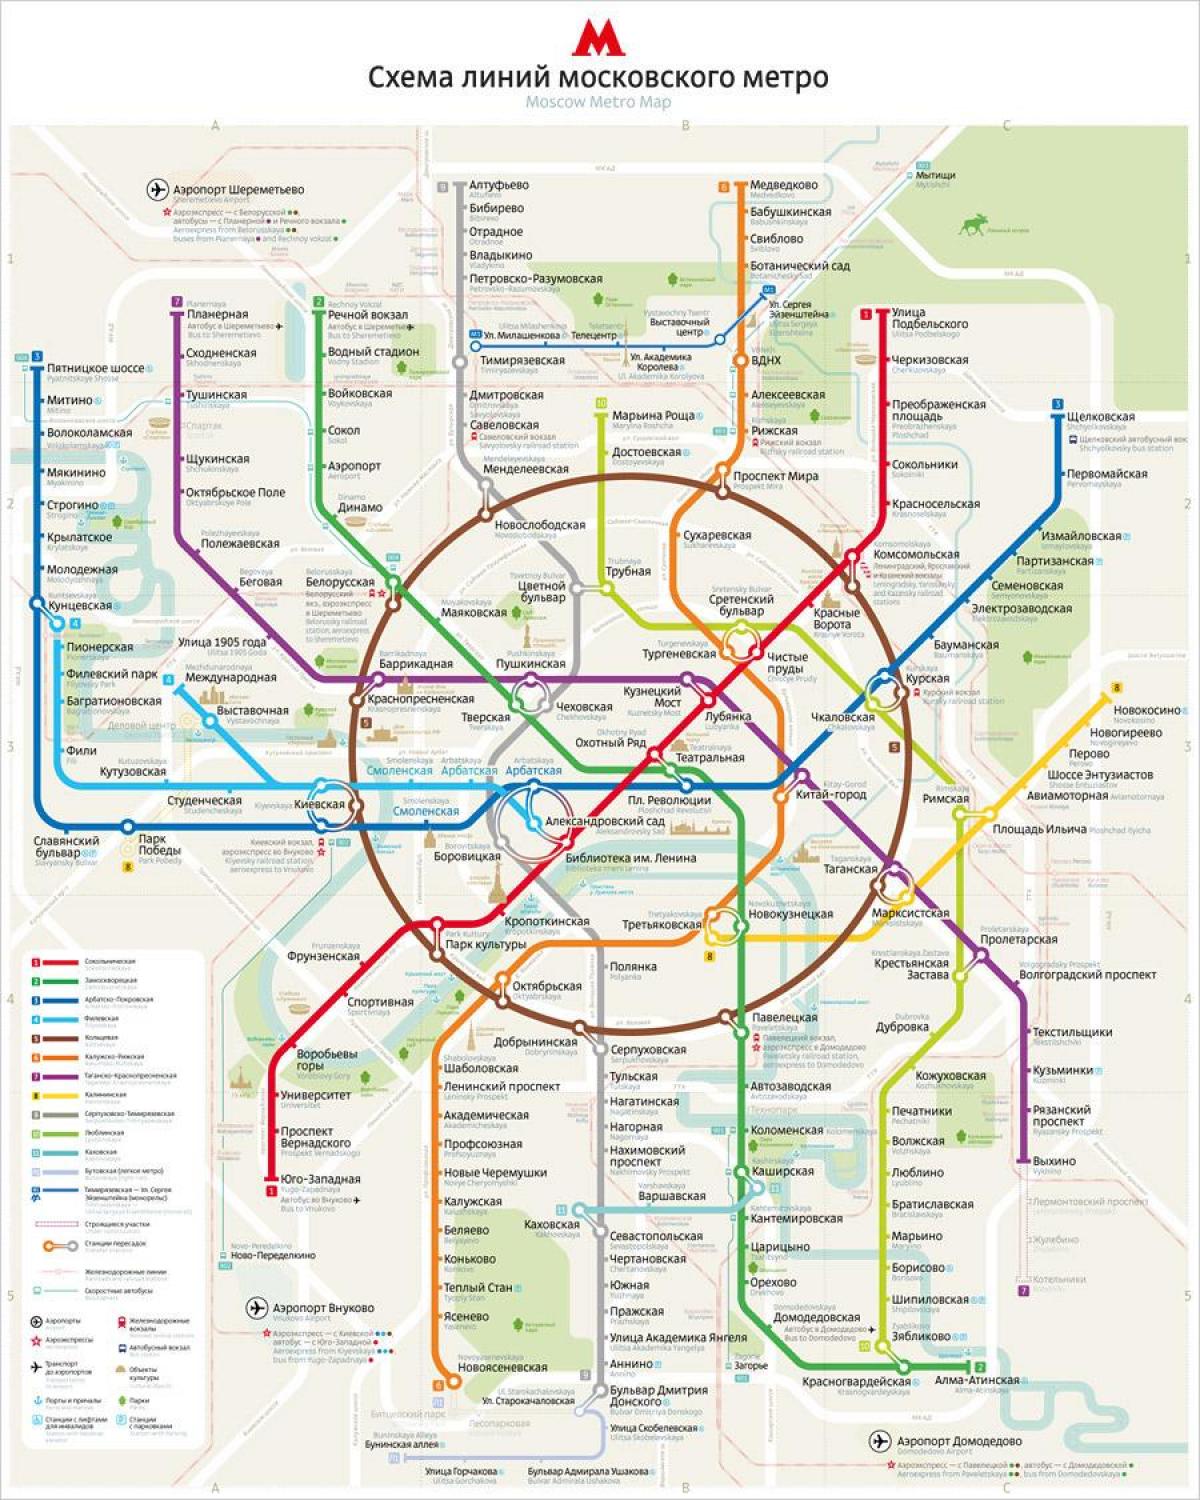 Moscow metro bản đồ giờ đây đã có phiên bản tiếng Anh và Nga, giúp du khách dễ dàng sử dụng hơn bao giờ hết. Hãy xem các hình ảnh liên quan để cùng khám phá Moscow metro và trải nghiệm hành trình tuyệt vời nhất.